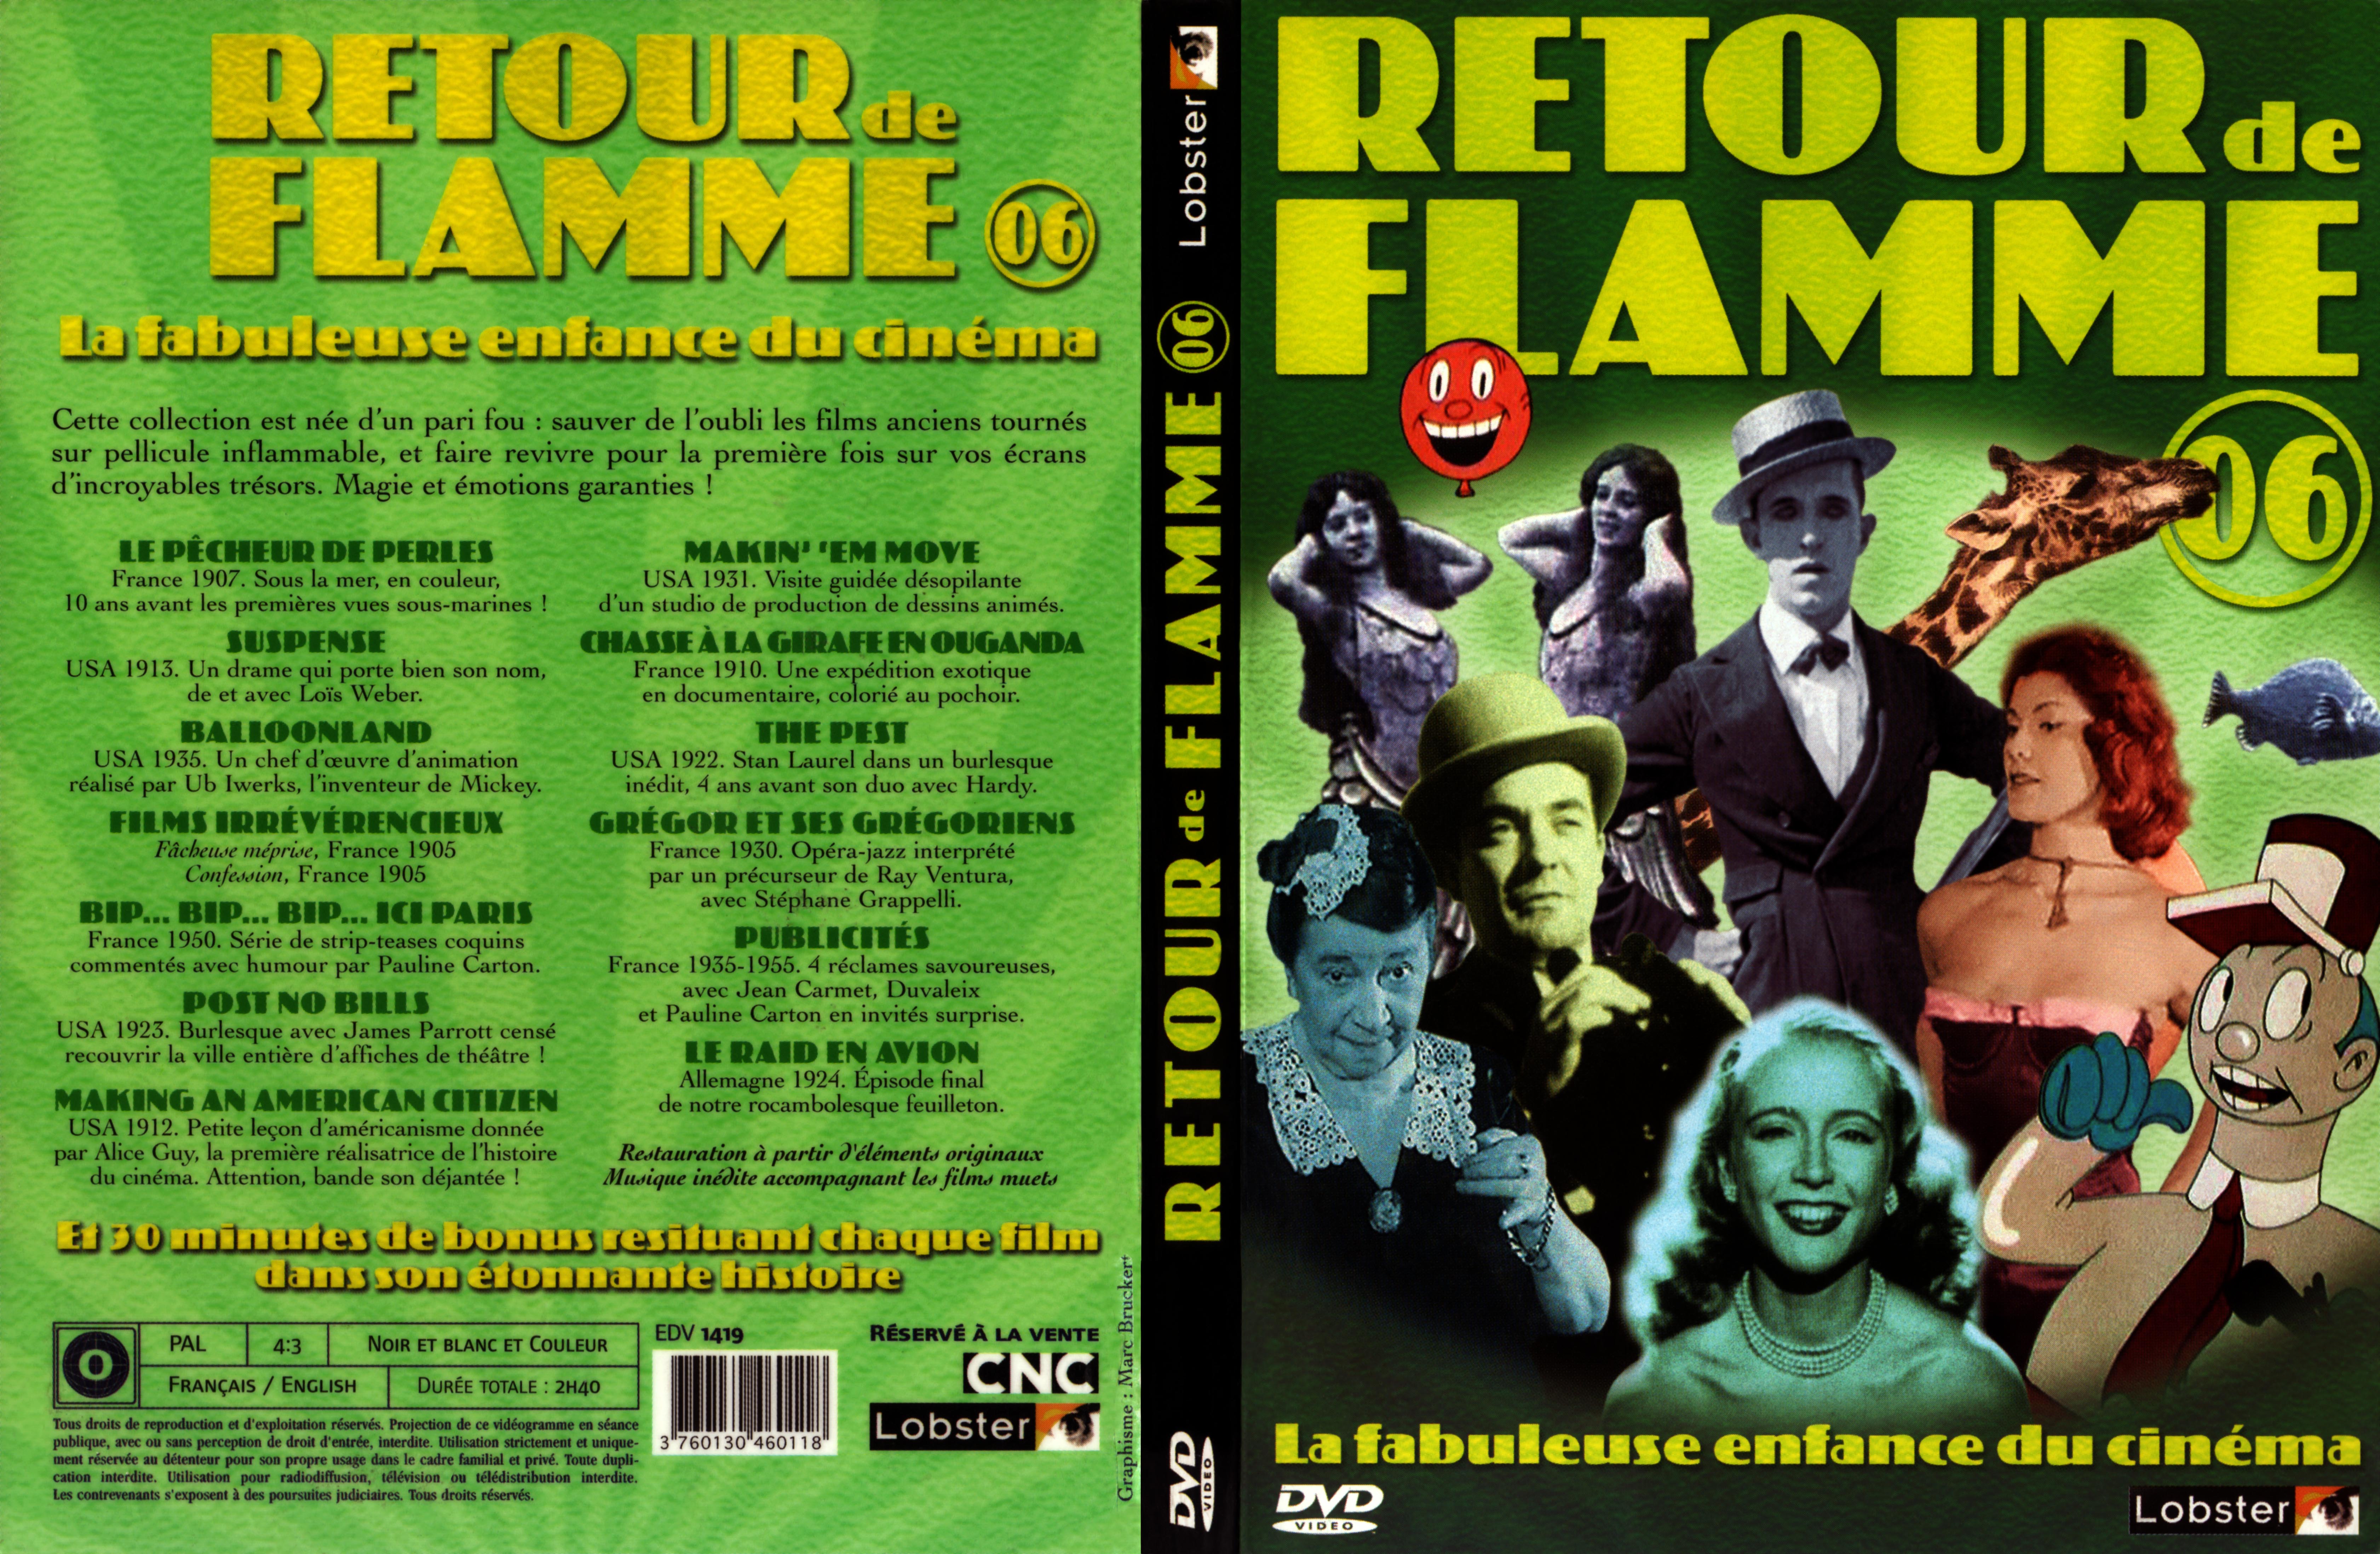 Jaquette DVD Retour de flamme 06